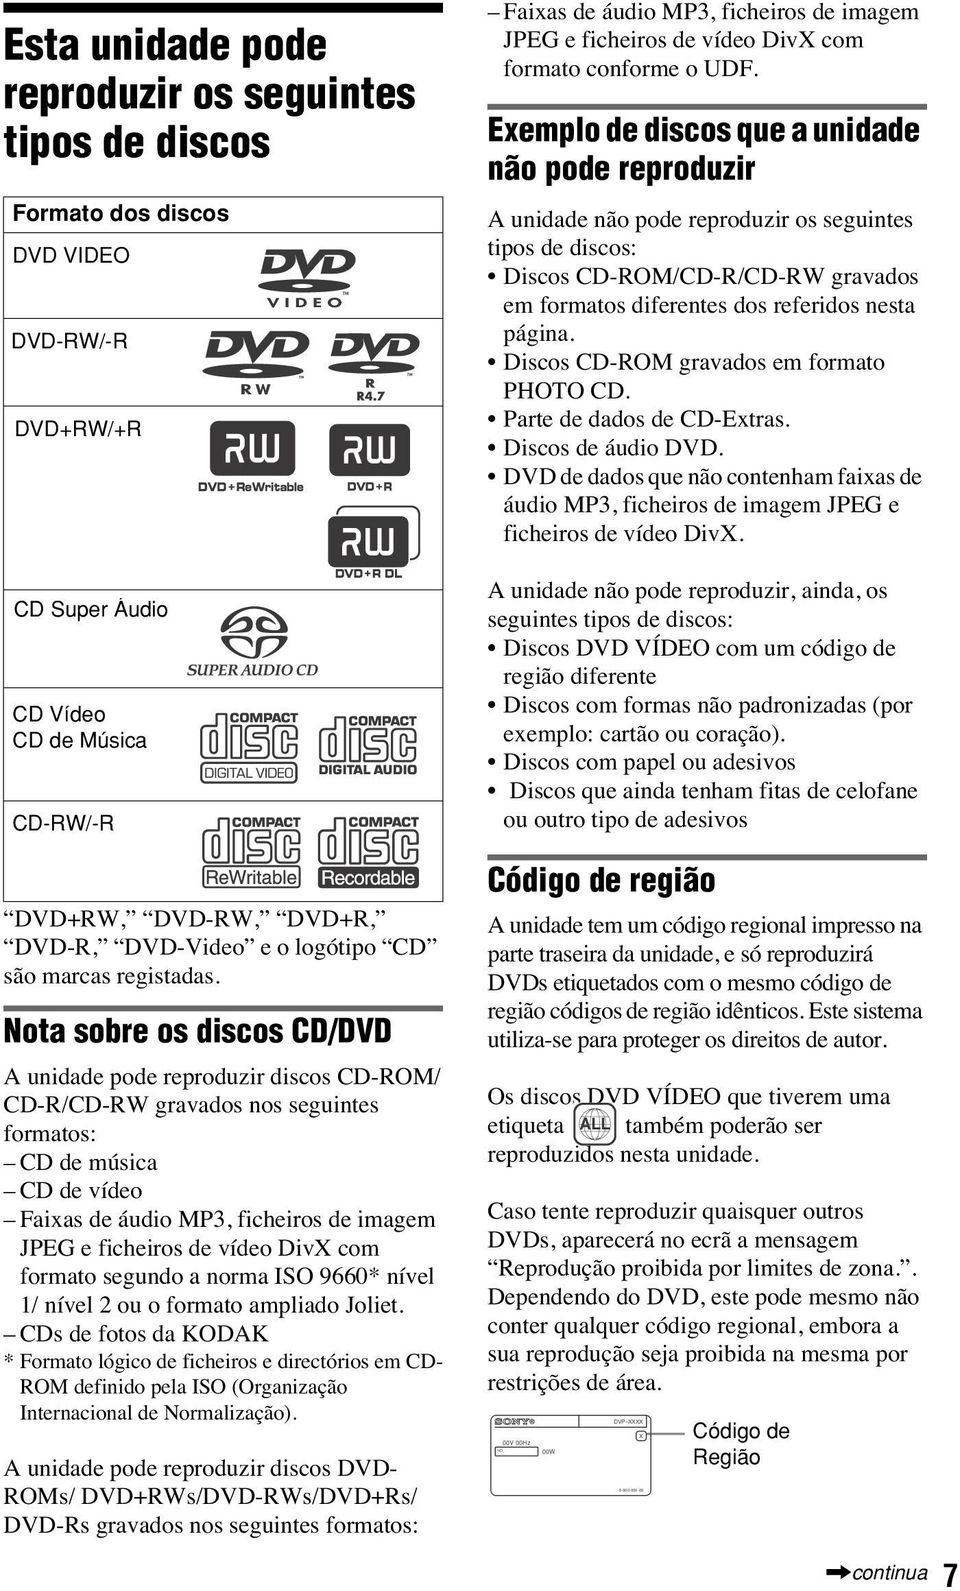 Nota sobre os discos CD/DVD A unidade pode reproduzir discos CD-ROM/ CD-R/CD-RW gravados nos seguintes formatos: CD de música CD de vídeo Faixas de áudio MP3, ficheiros de imagem JPEG e ficheiros de